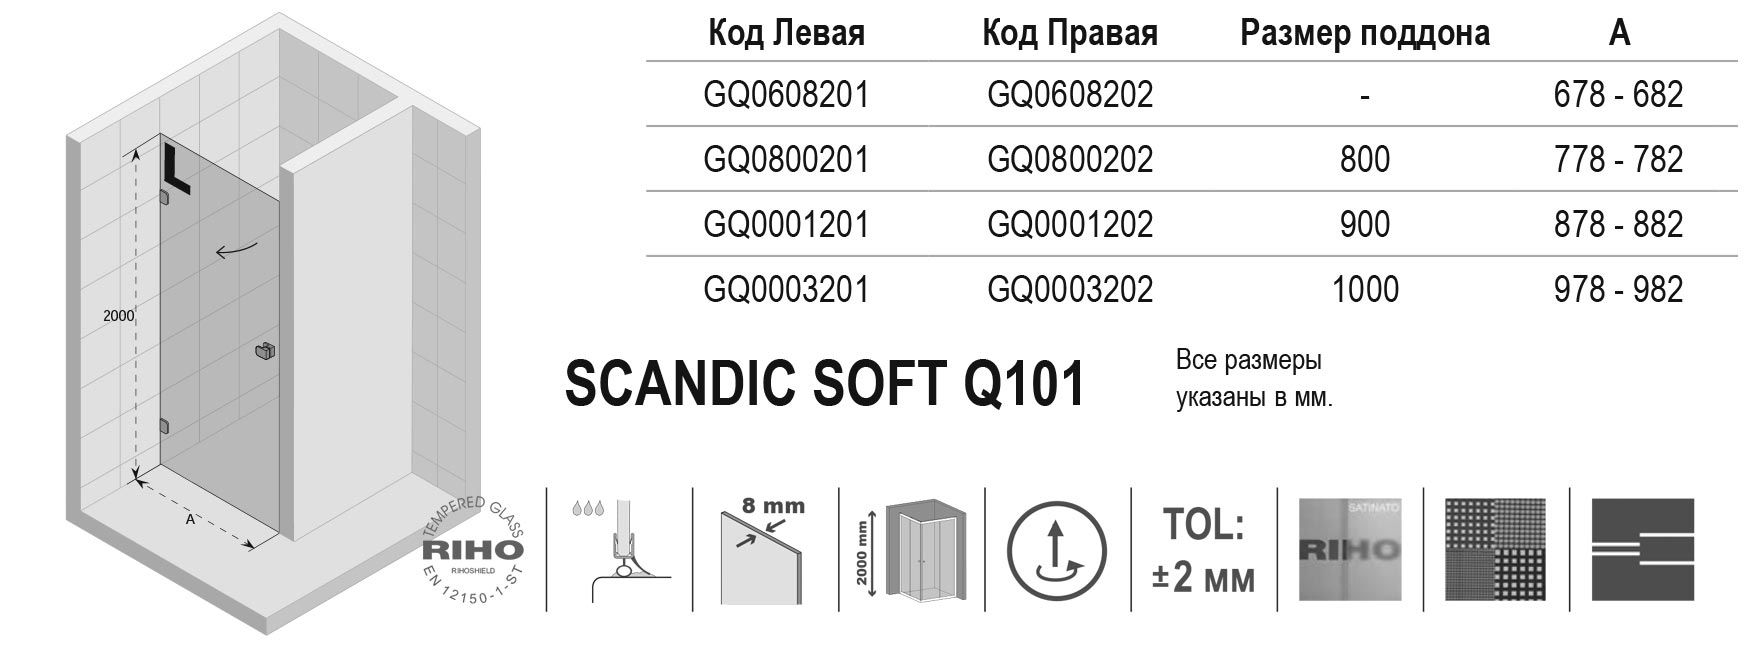 Чертёж Riho Scandic Soft Q101